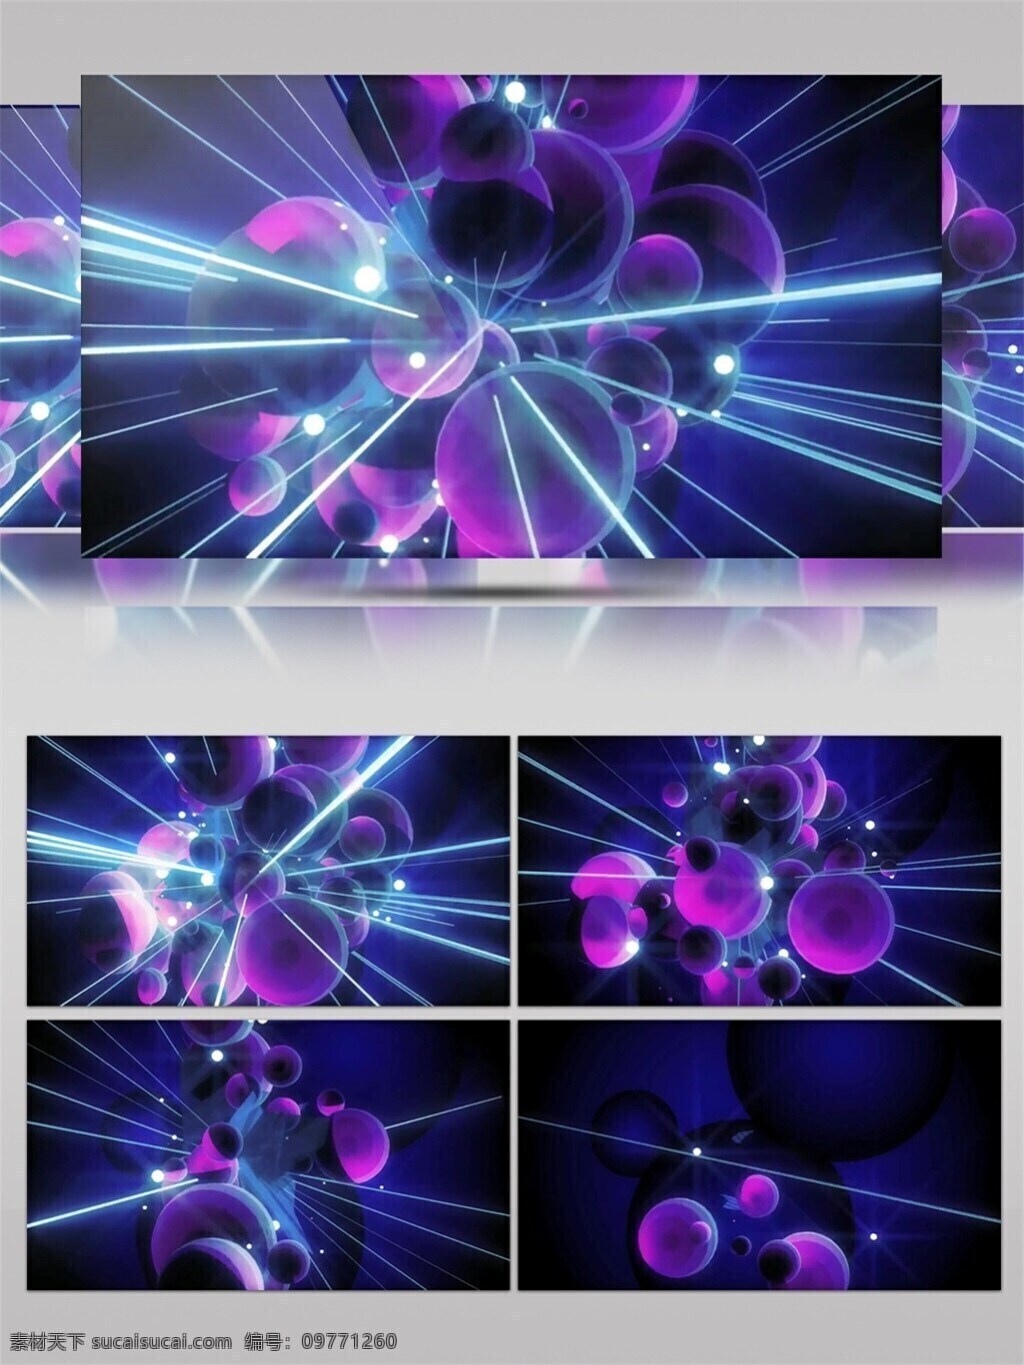 紫色 球体 分子结构 高清 视频 动态视频素材 梦幻紫色 视频素材 唯美浪漫